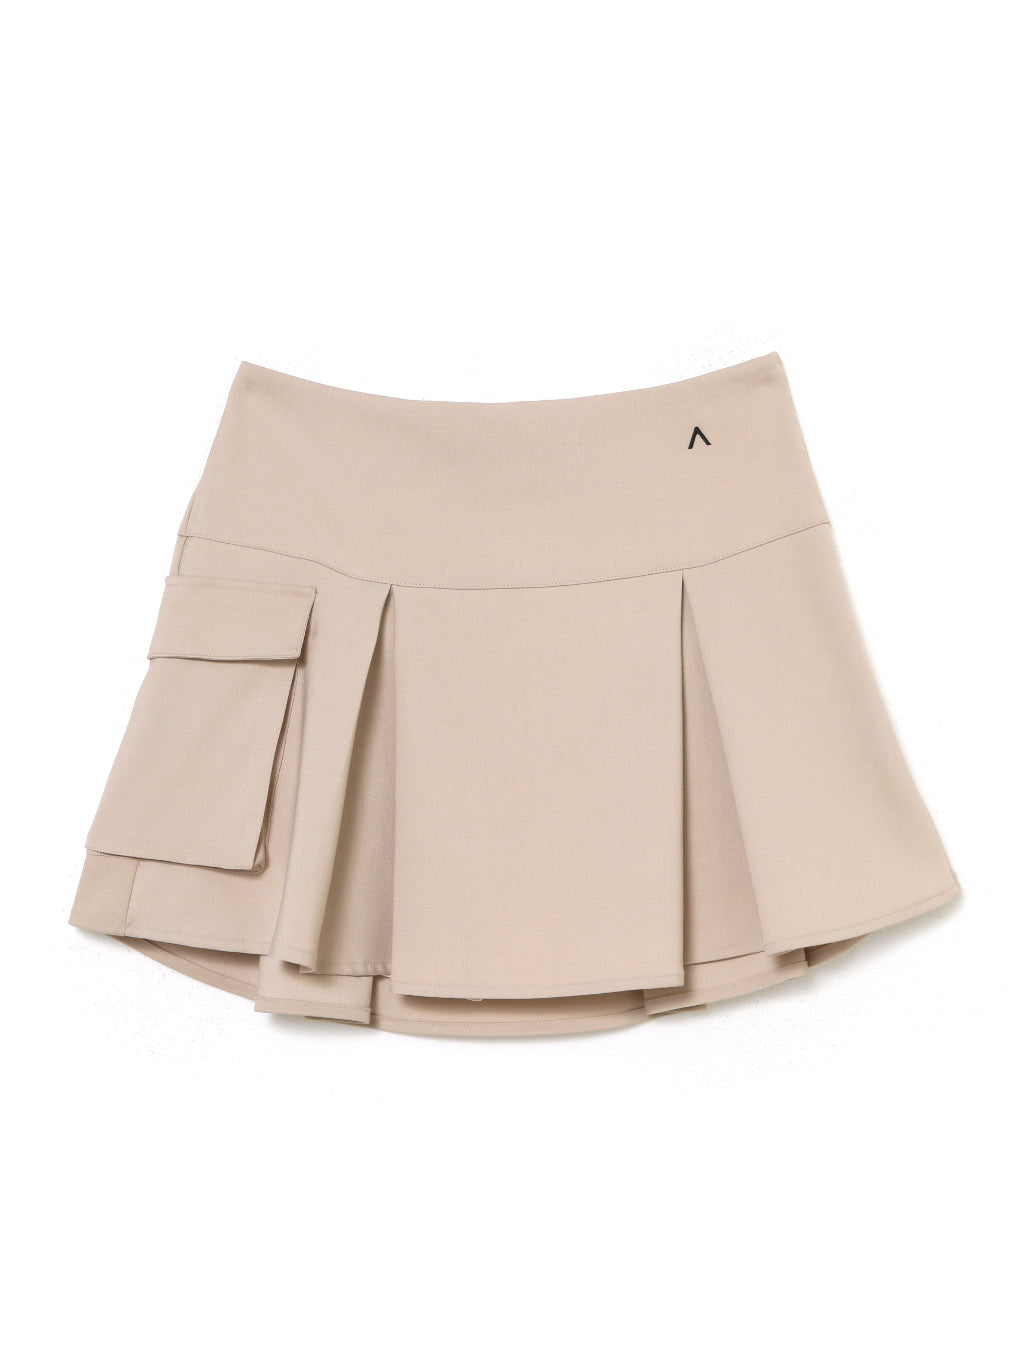 9,680円Nina flare mini skirt ANDMARY